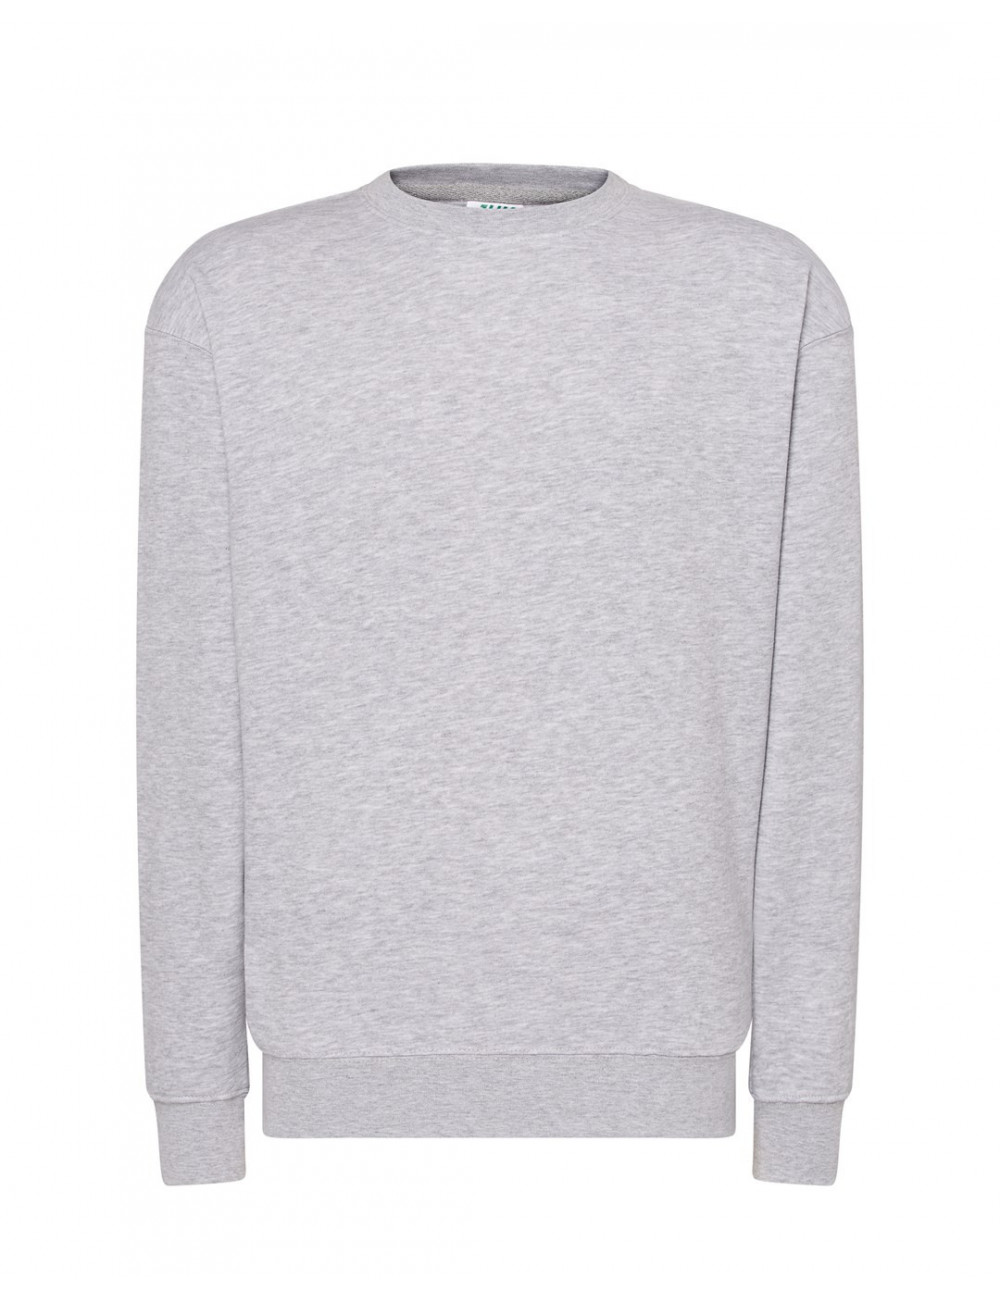 Sweatshirt for men swra 290 sweatshirt gray melange Jhk